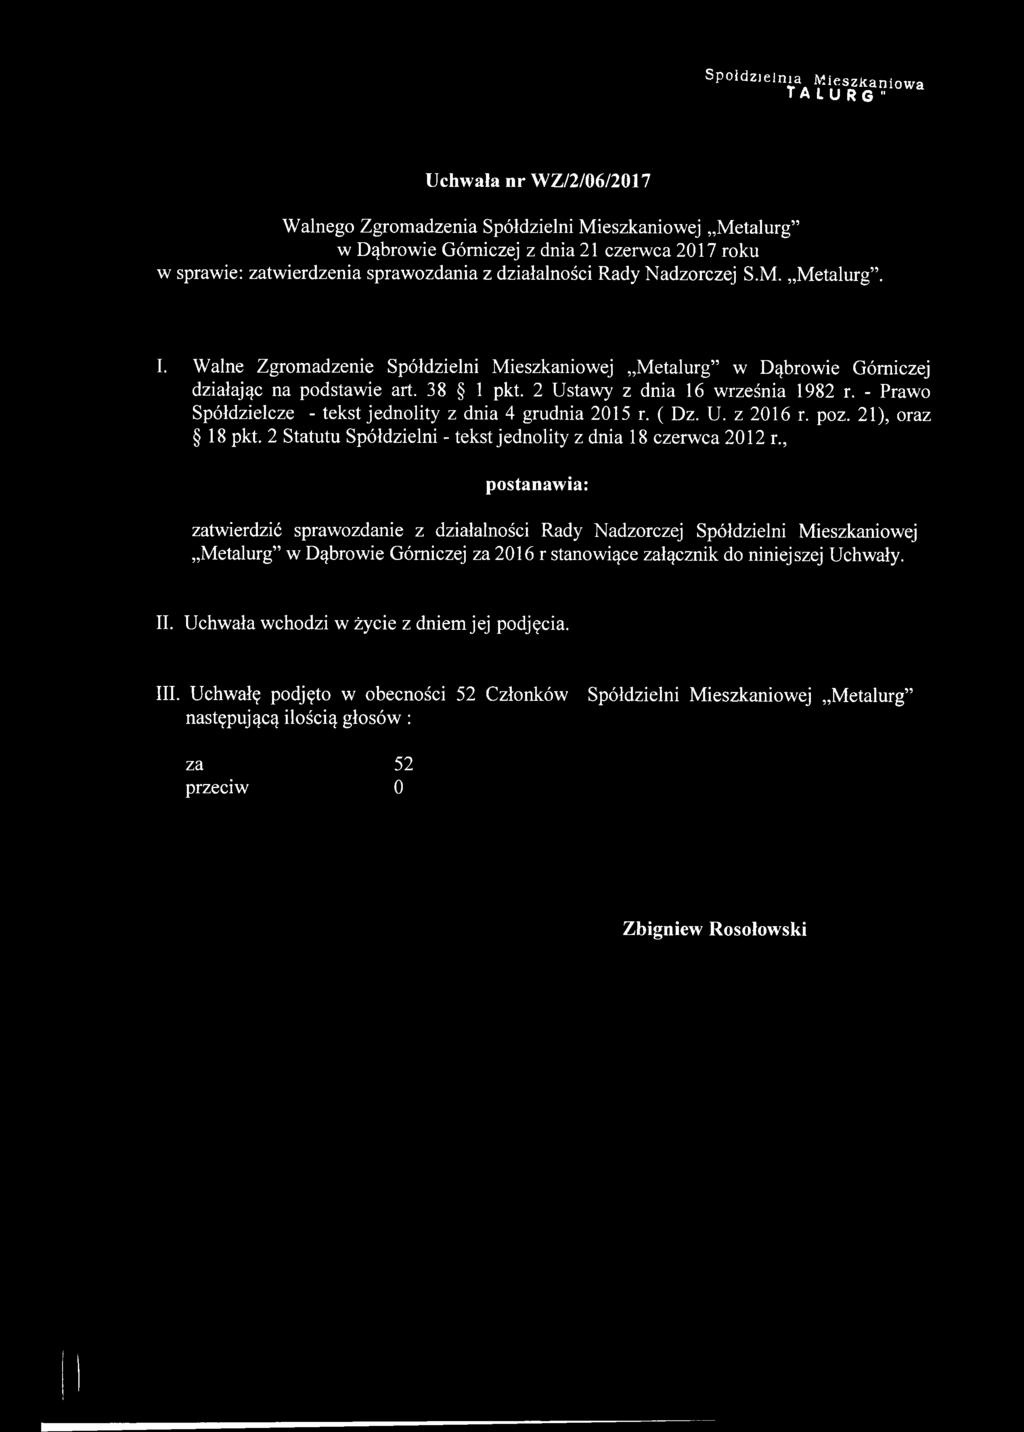 Walne Zgromadzenie Spółdzielni Mieszkaniowej Metalurg w Dąbrowie Górniczej działając na podstawie art. 38 1 pkt. 2 Ustawy z dnia 16 września 1982 r.